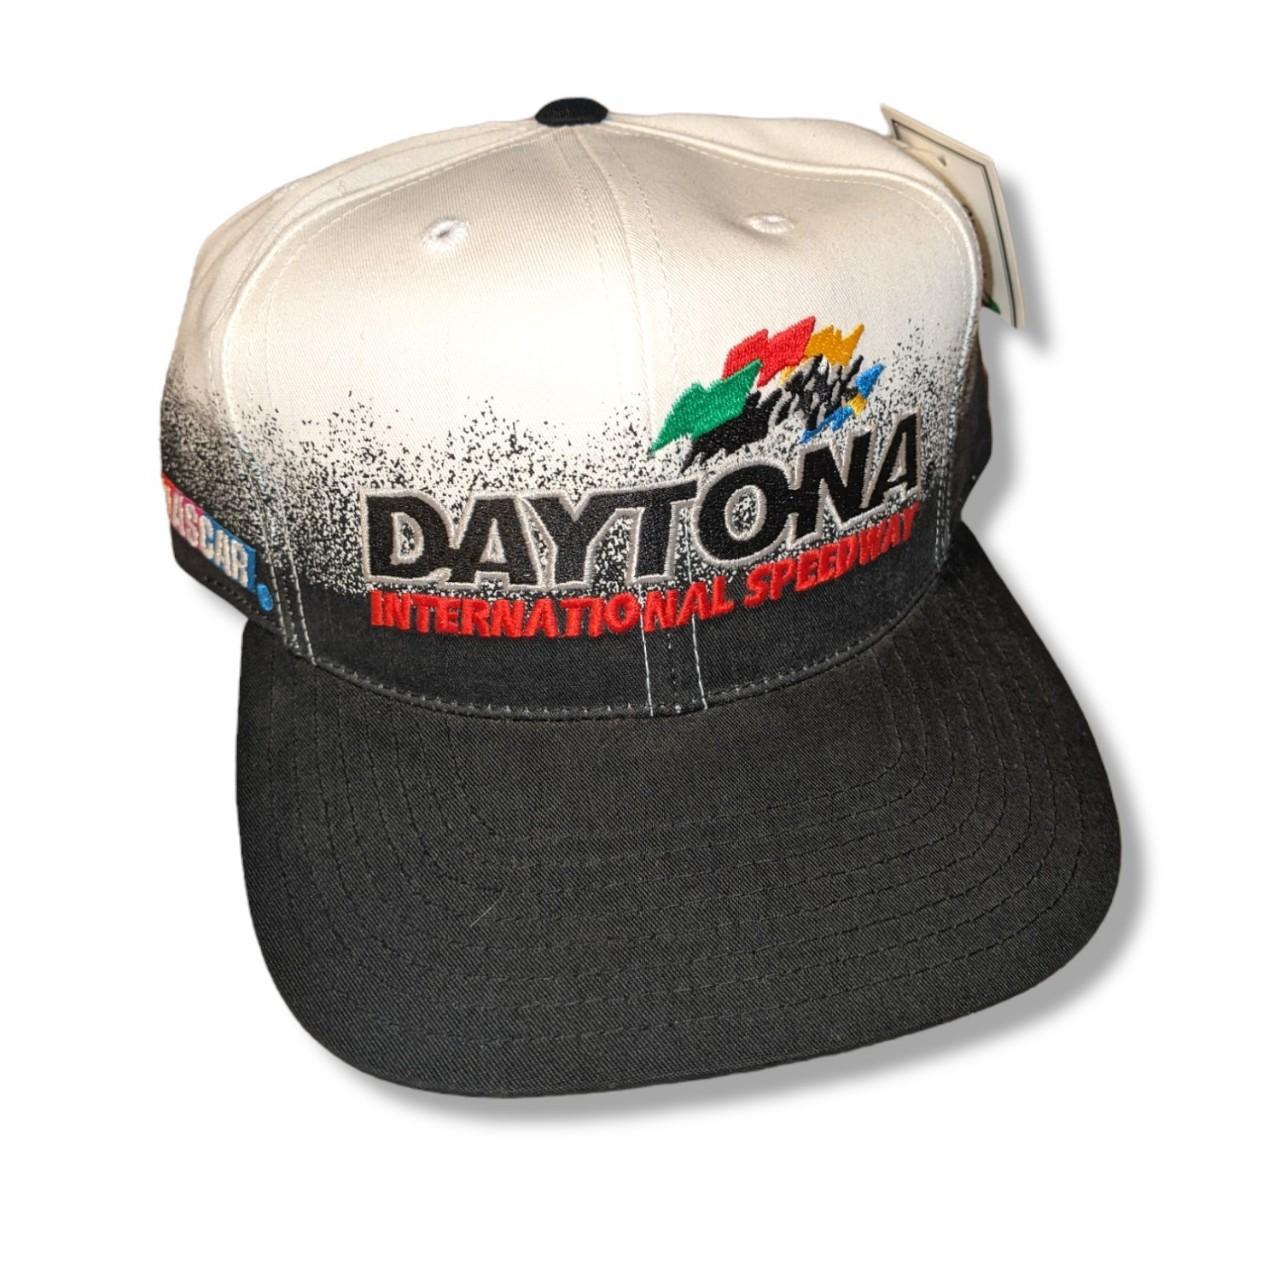 1998 Daytona NASCAR hat